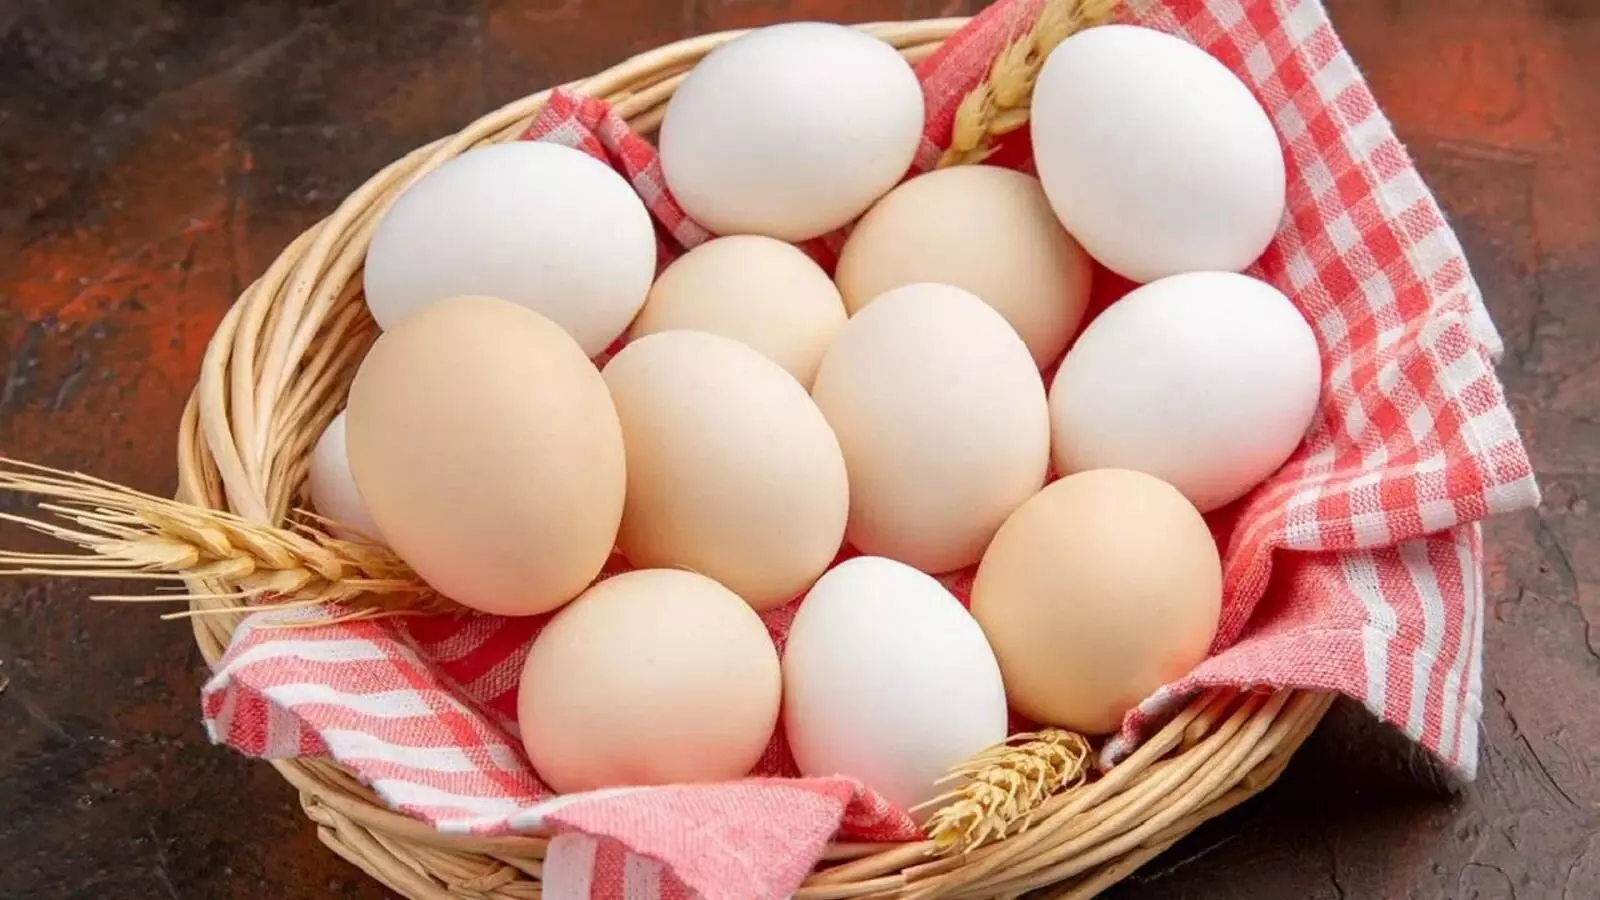 Bareilly: सावन में सस्ता होगा अंडे के भाव, मांस की खपत में 30 प्रतिशत की गिरावट